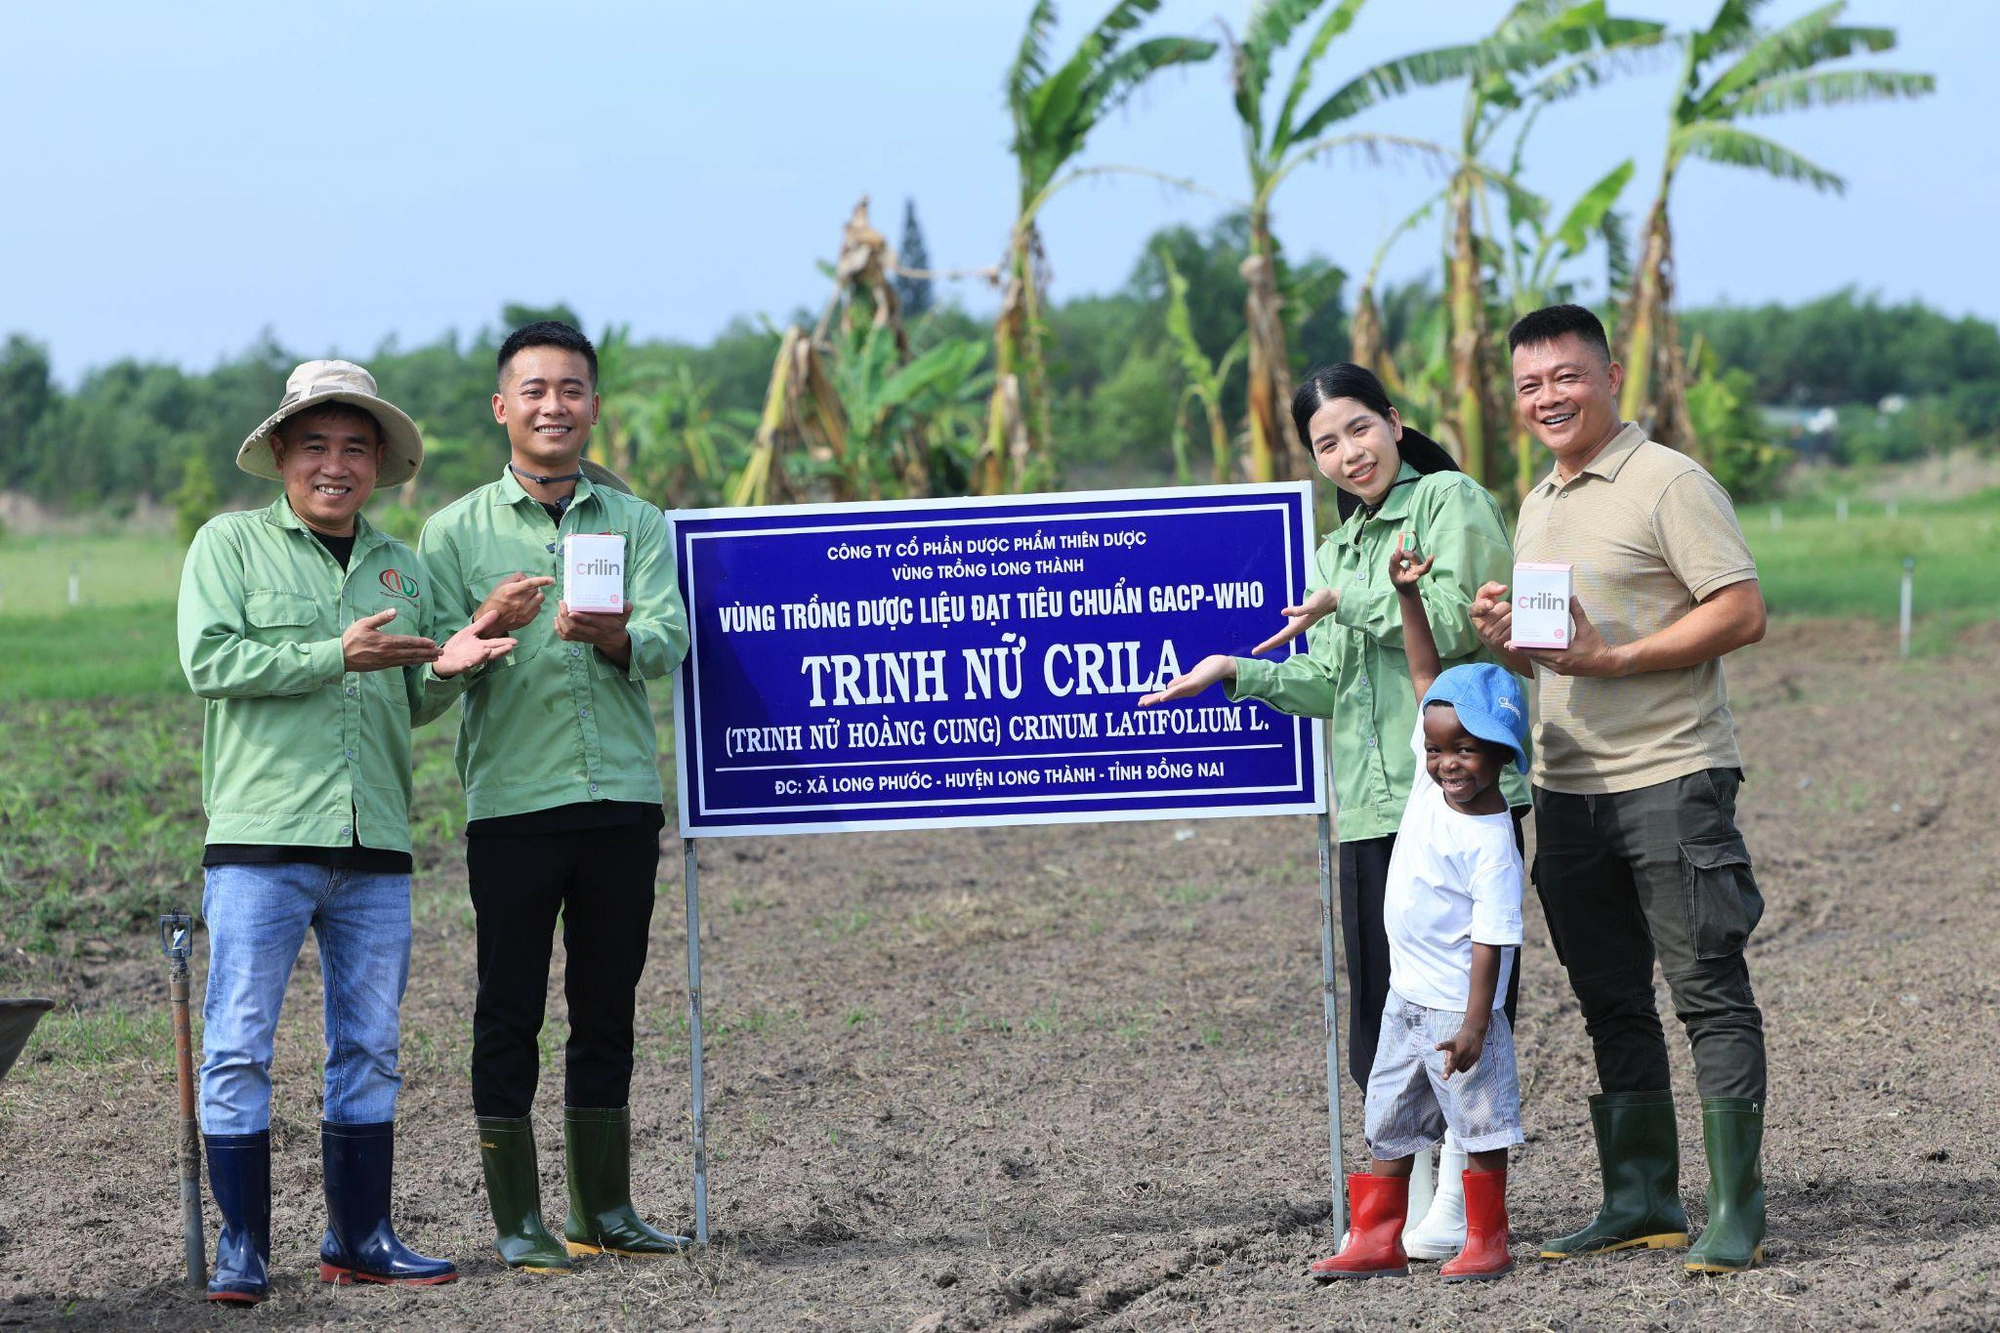 Tuoitre: Quang Linh Vlogs trải nghiệm thực tế vùng trồng Trinh nữ Crila